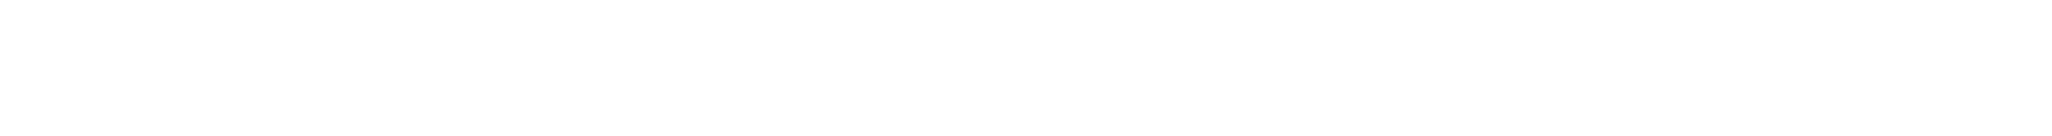 logo sanofi genzyme regeneron